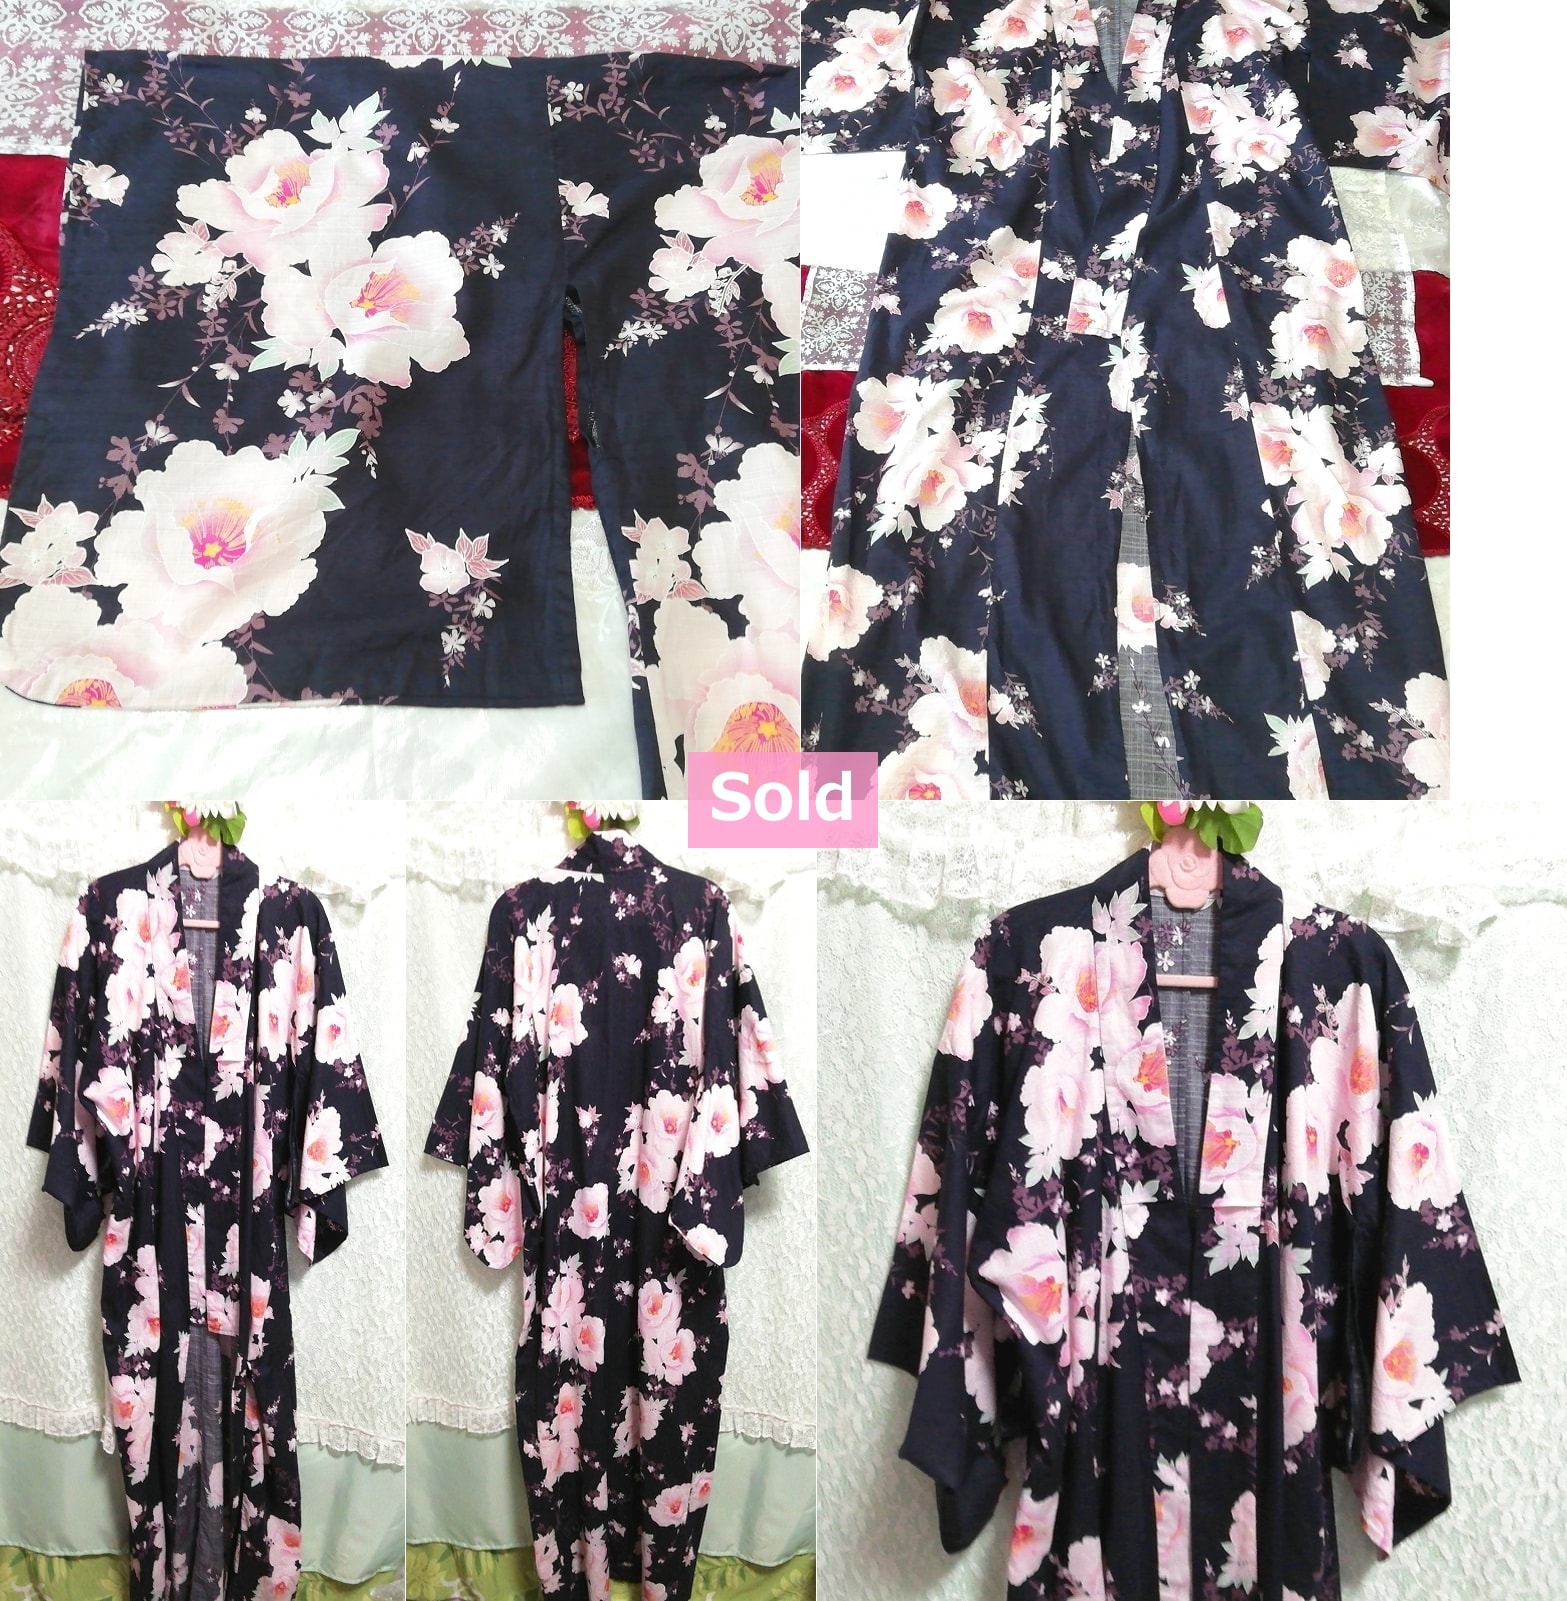 नेवी ब्लू व्हाइट चेरी ब्लॉसम पिंक फ्लोरल युक्ता किमोनो जापान ड्रेस, महिलाओं की किमोनो, किमोनो और युकाटा और अन्य